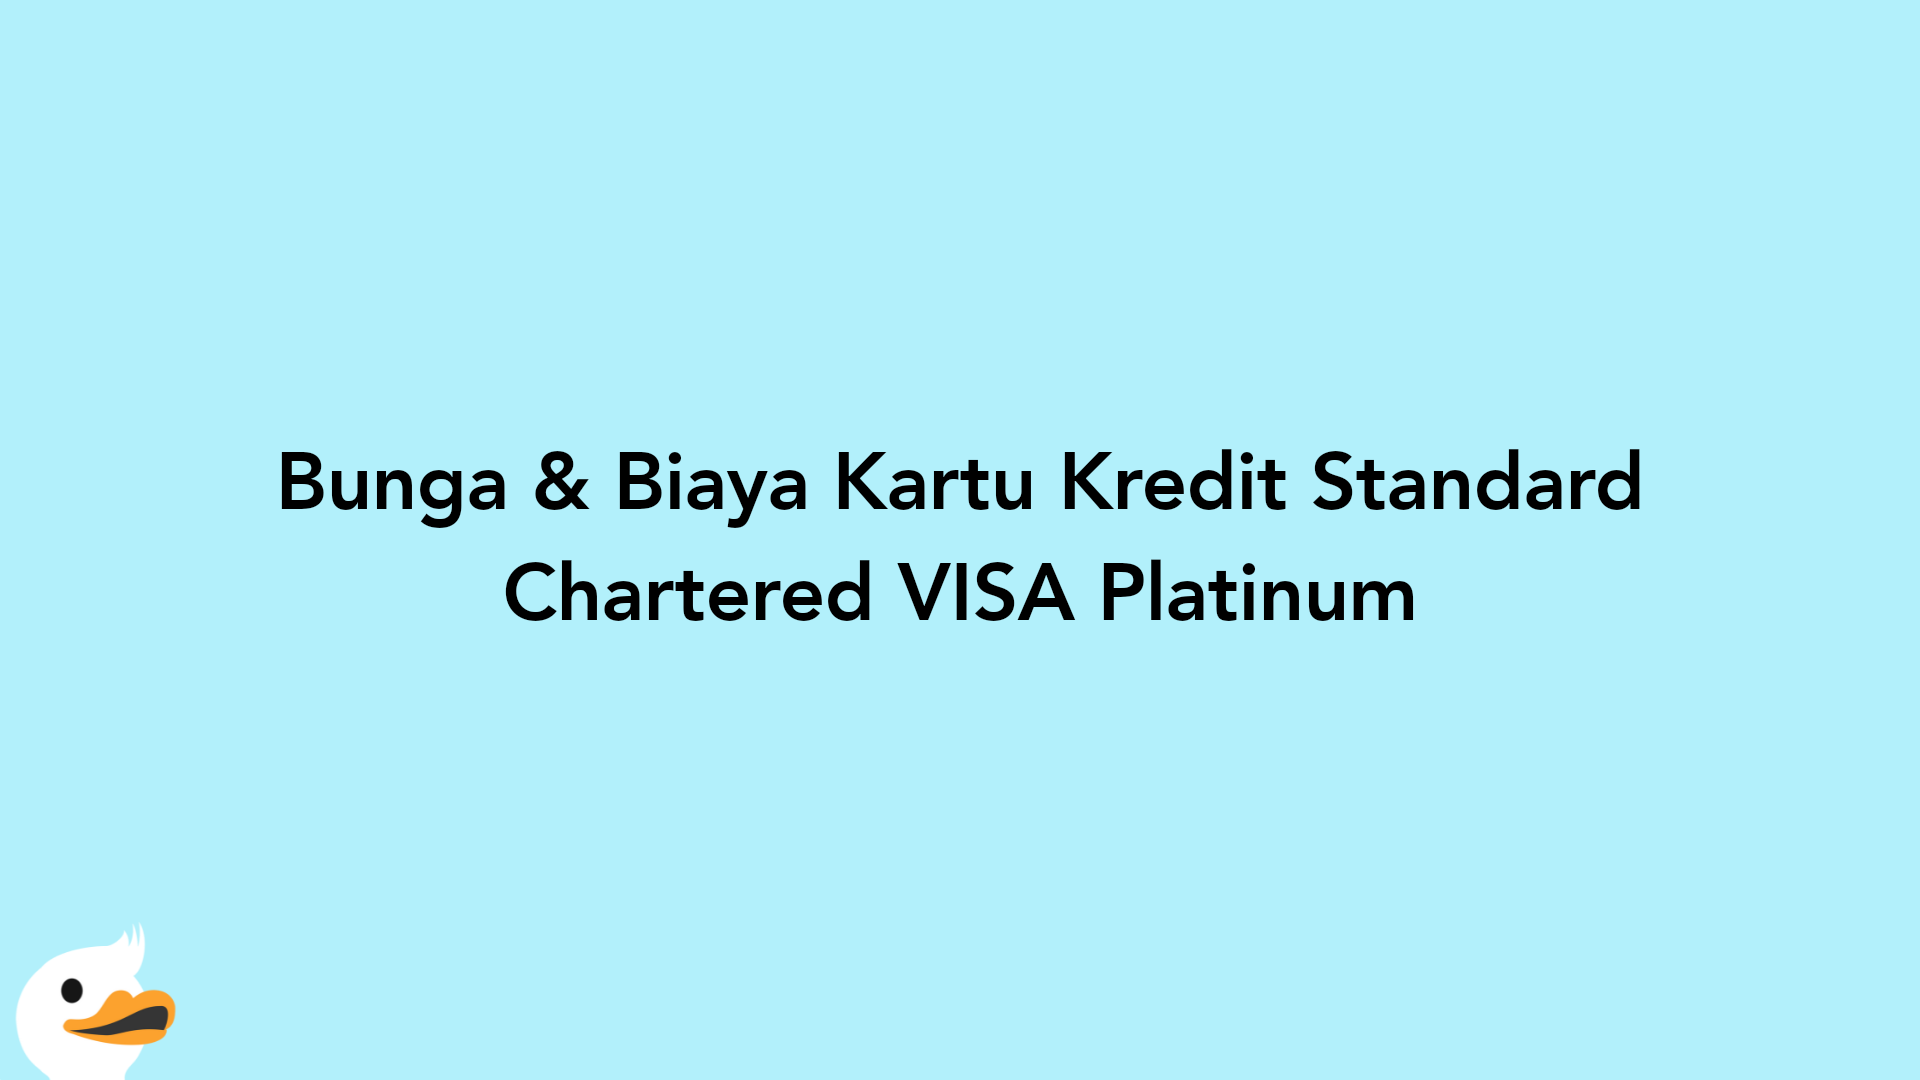 Bunga & Biaya Kartu Kredit Standard Chartered VISA Platinum